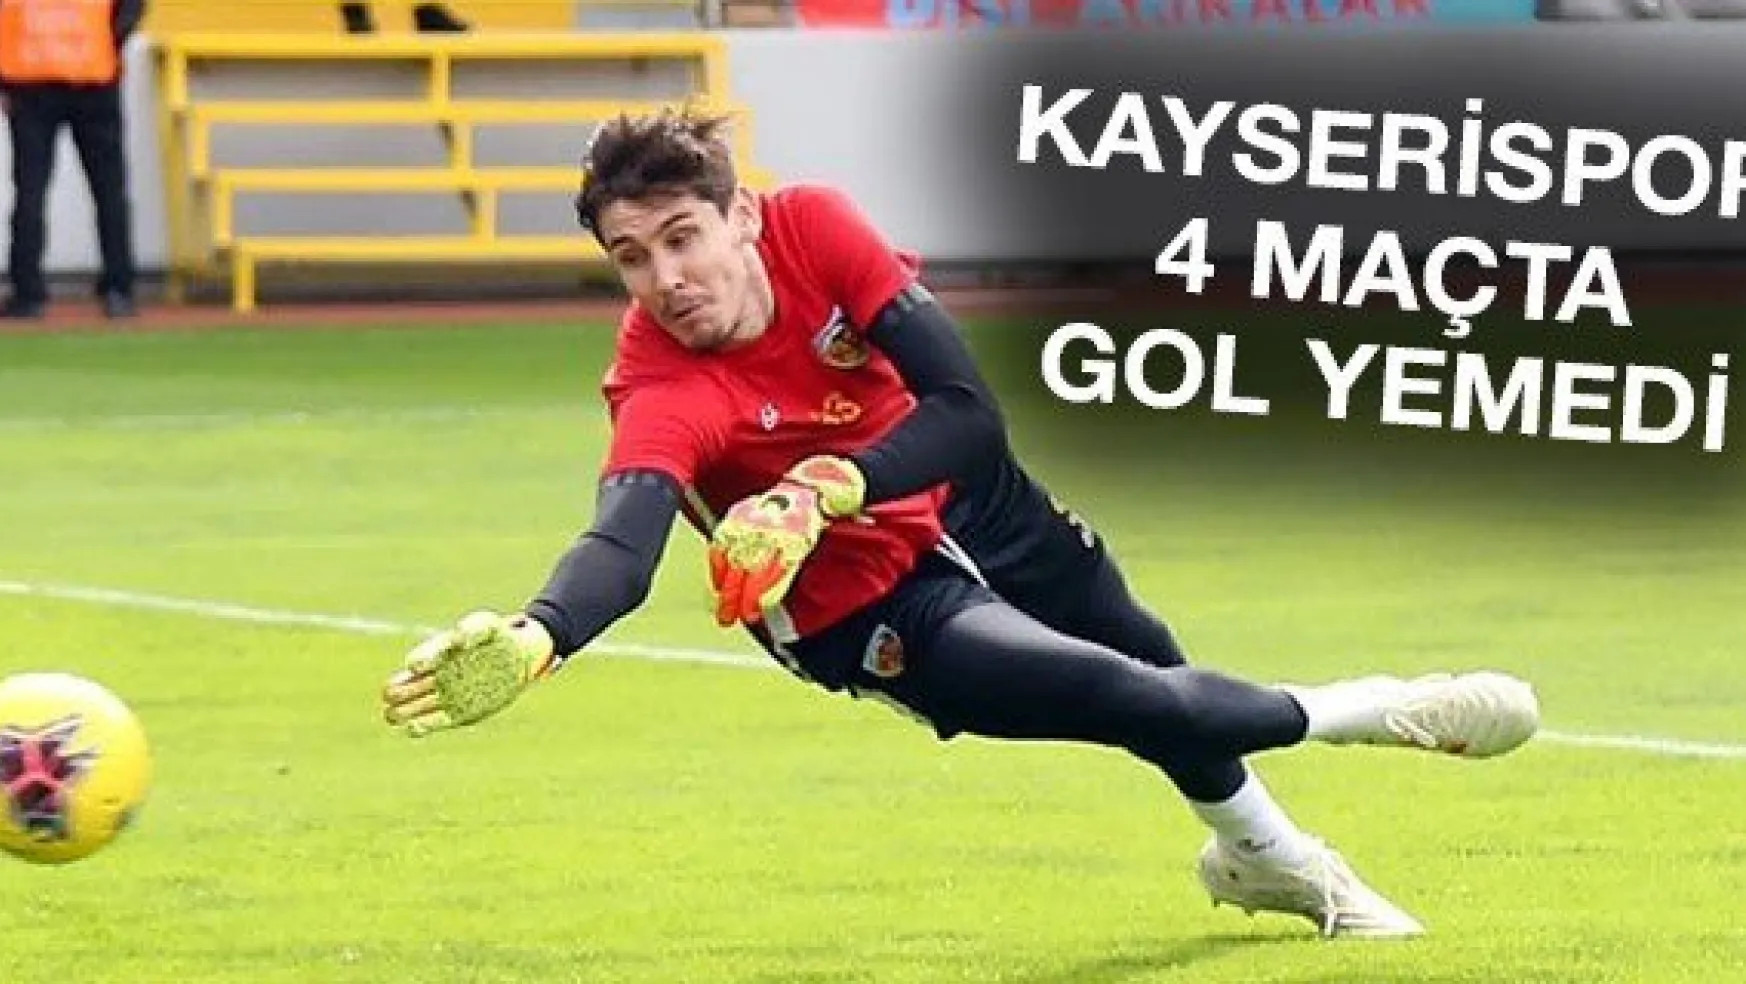 Kayserispor 4 maçta gol yemedi